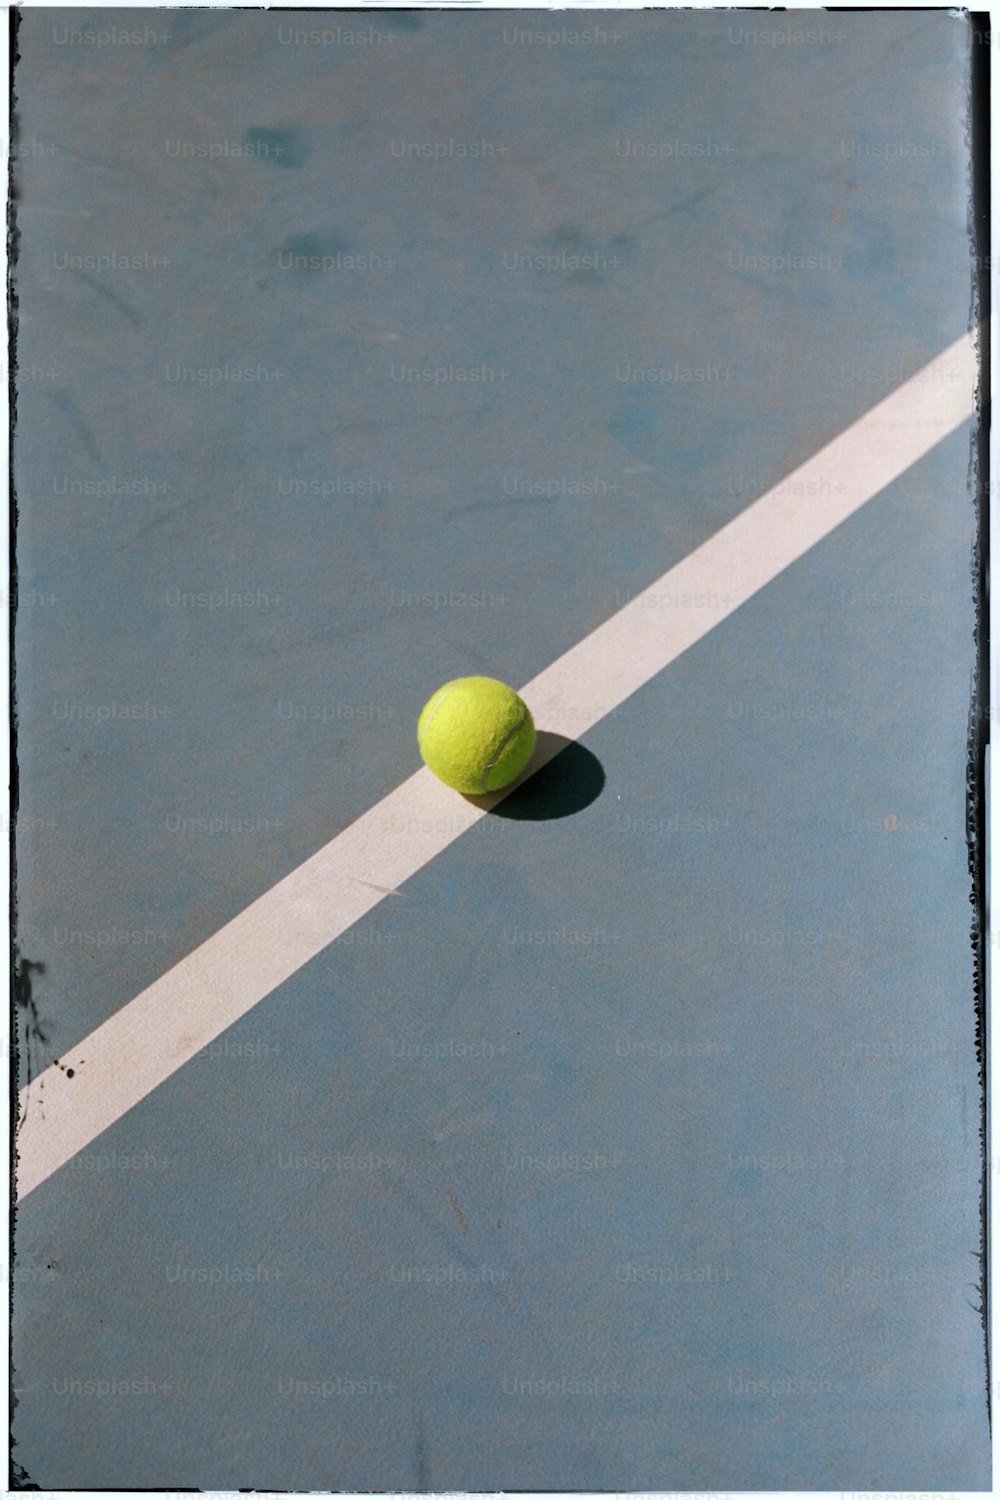 テニスコートに置かれたテニスボール